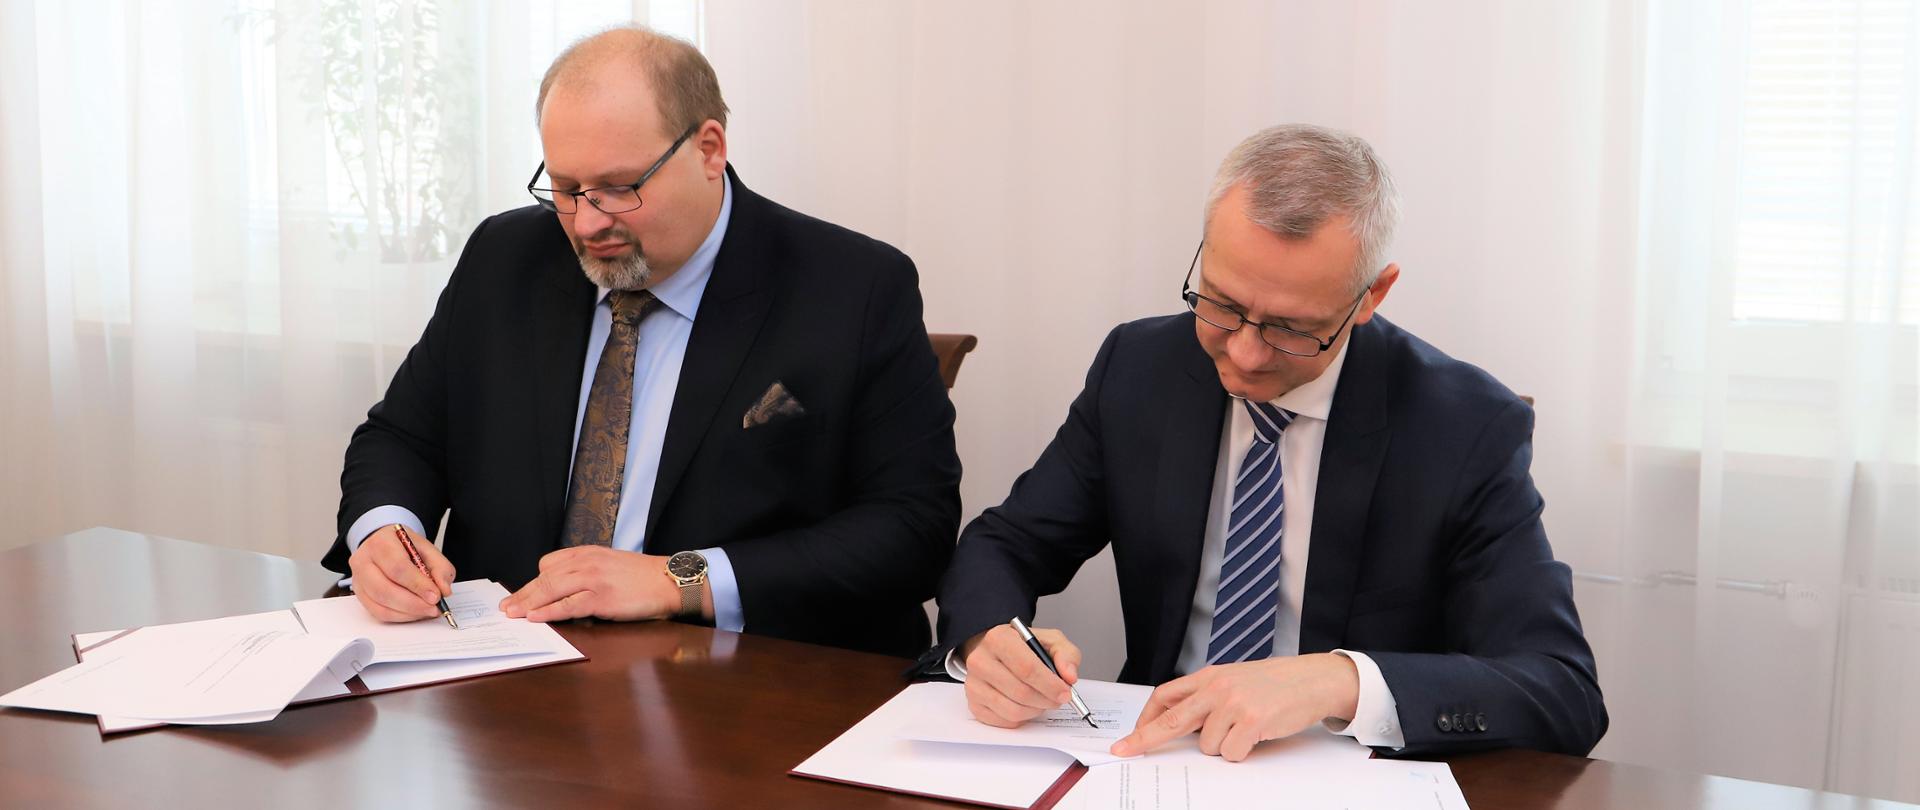 Andrzej Cieślak - prezes DYNACON Sp. z o.o. i Marek Zagórski - minister cyfryzacji siedzą przy stole i podpisują umowę o współpracy.